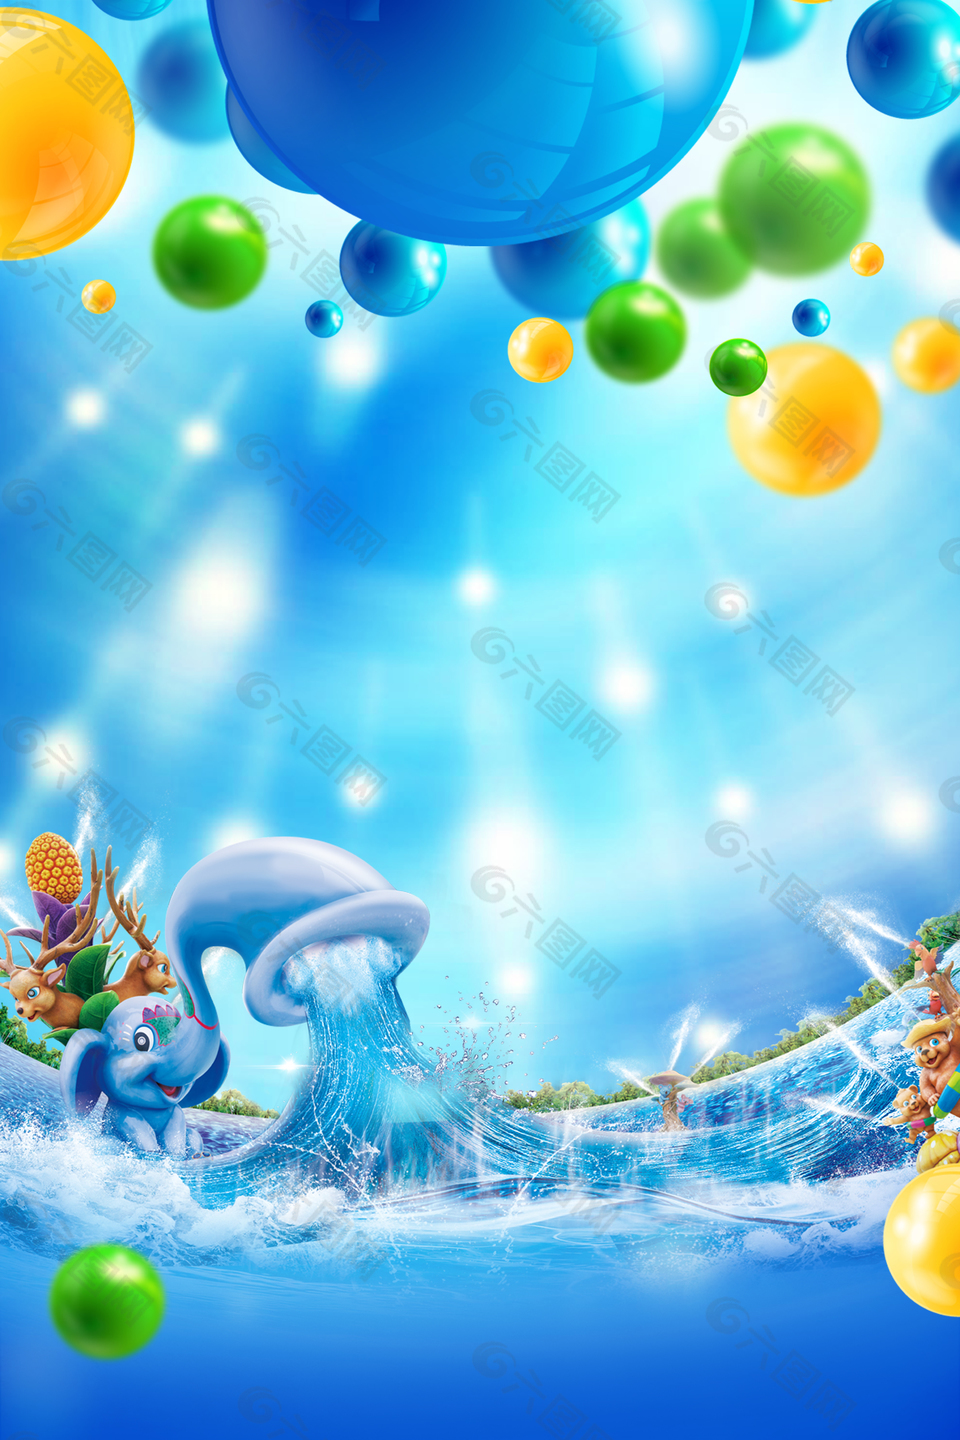 彩色立体水球水上乐园背景素材